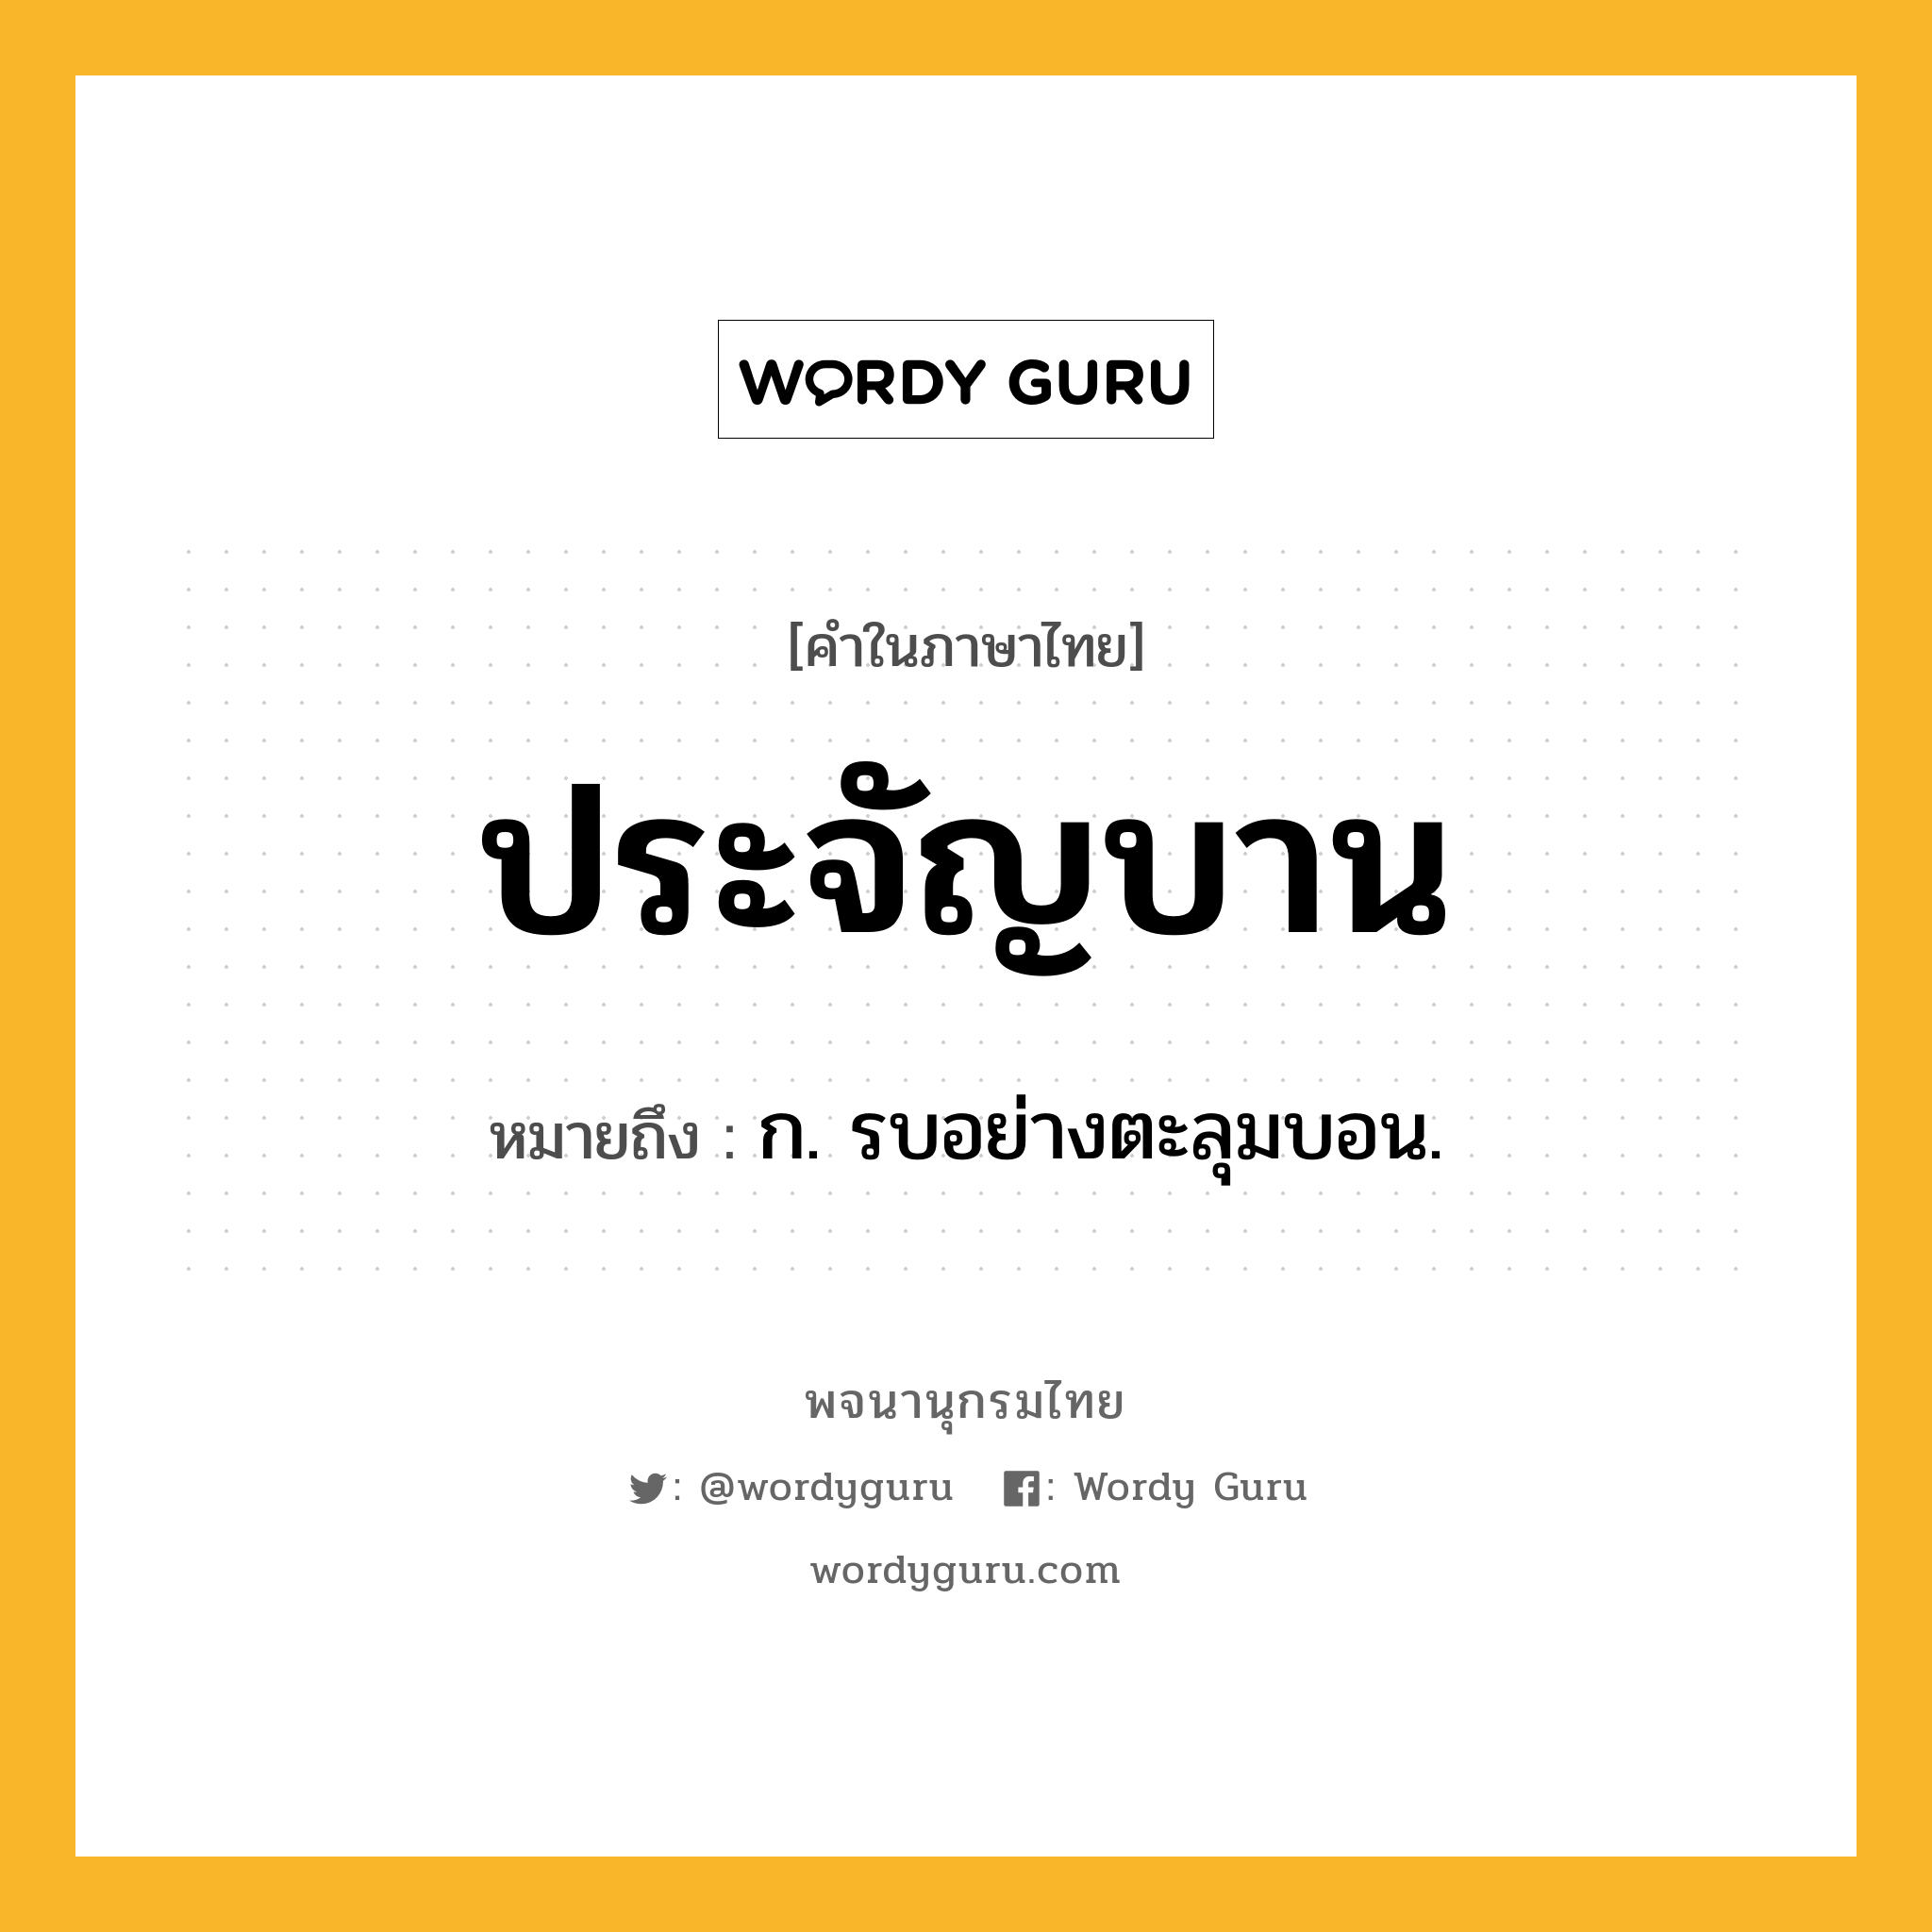 ประจัญบาน ความหมาย หมายถึงอะไร?, คำในภาษาไทย ประจัญบาน หมายถึง ก. รบอย่างตะลุมบอน.